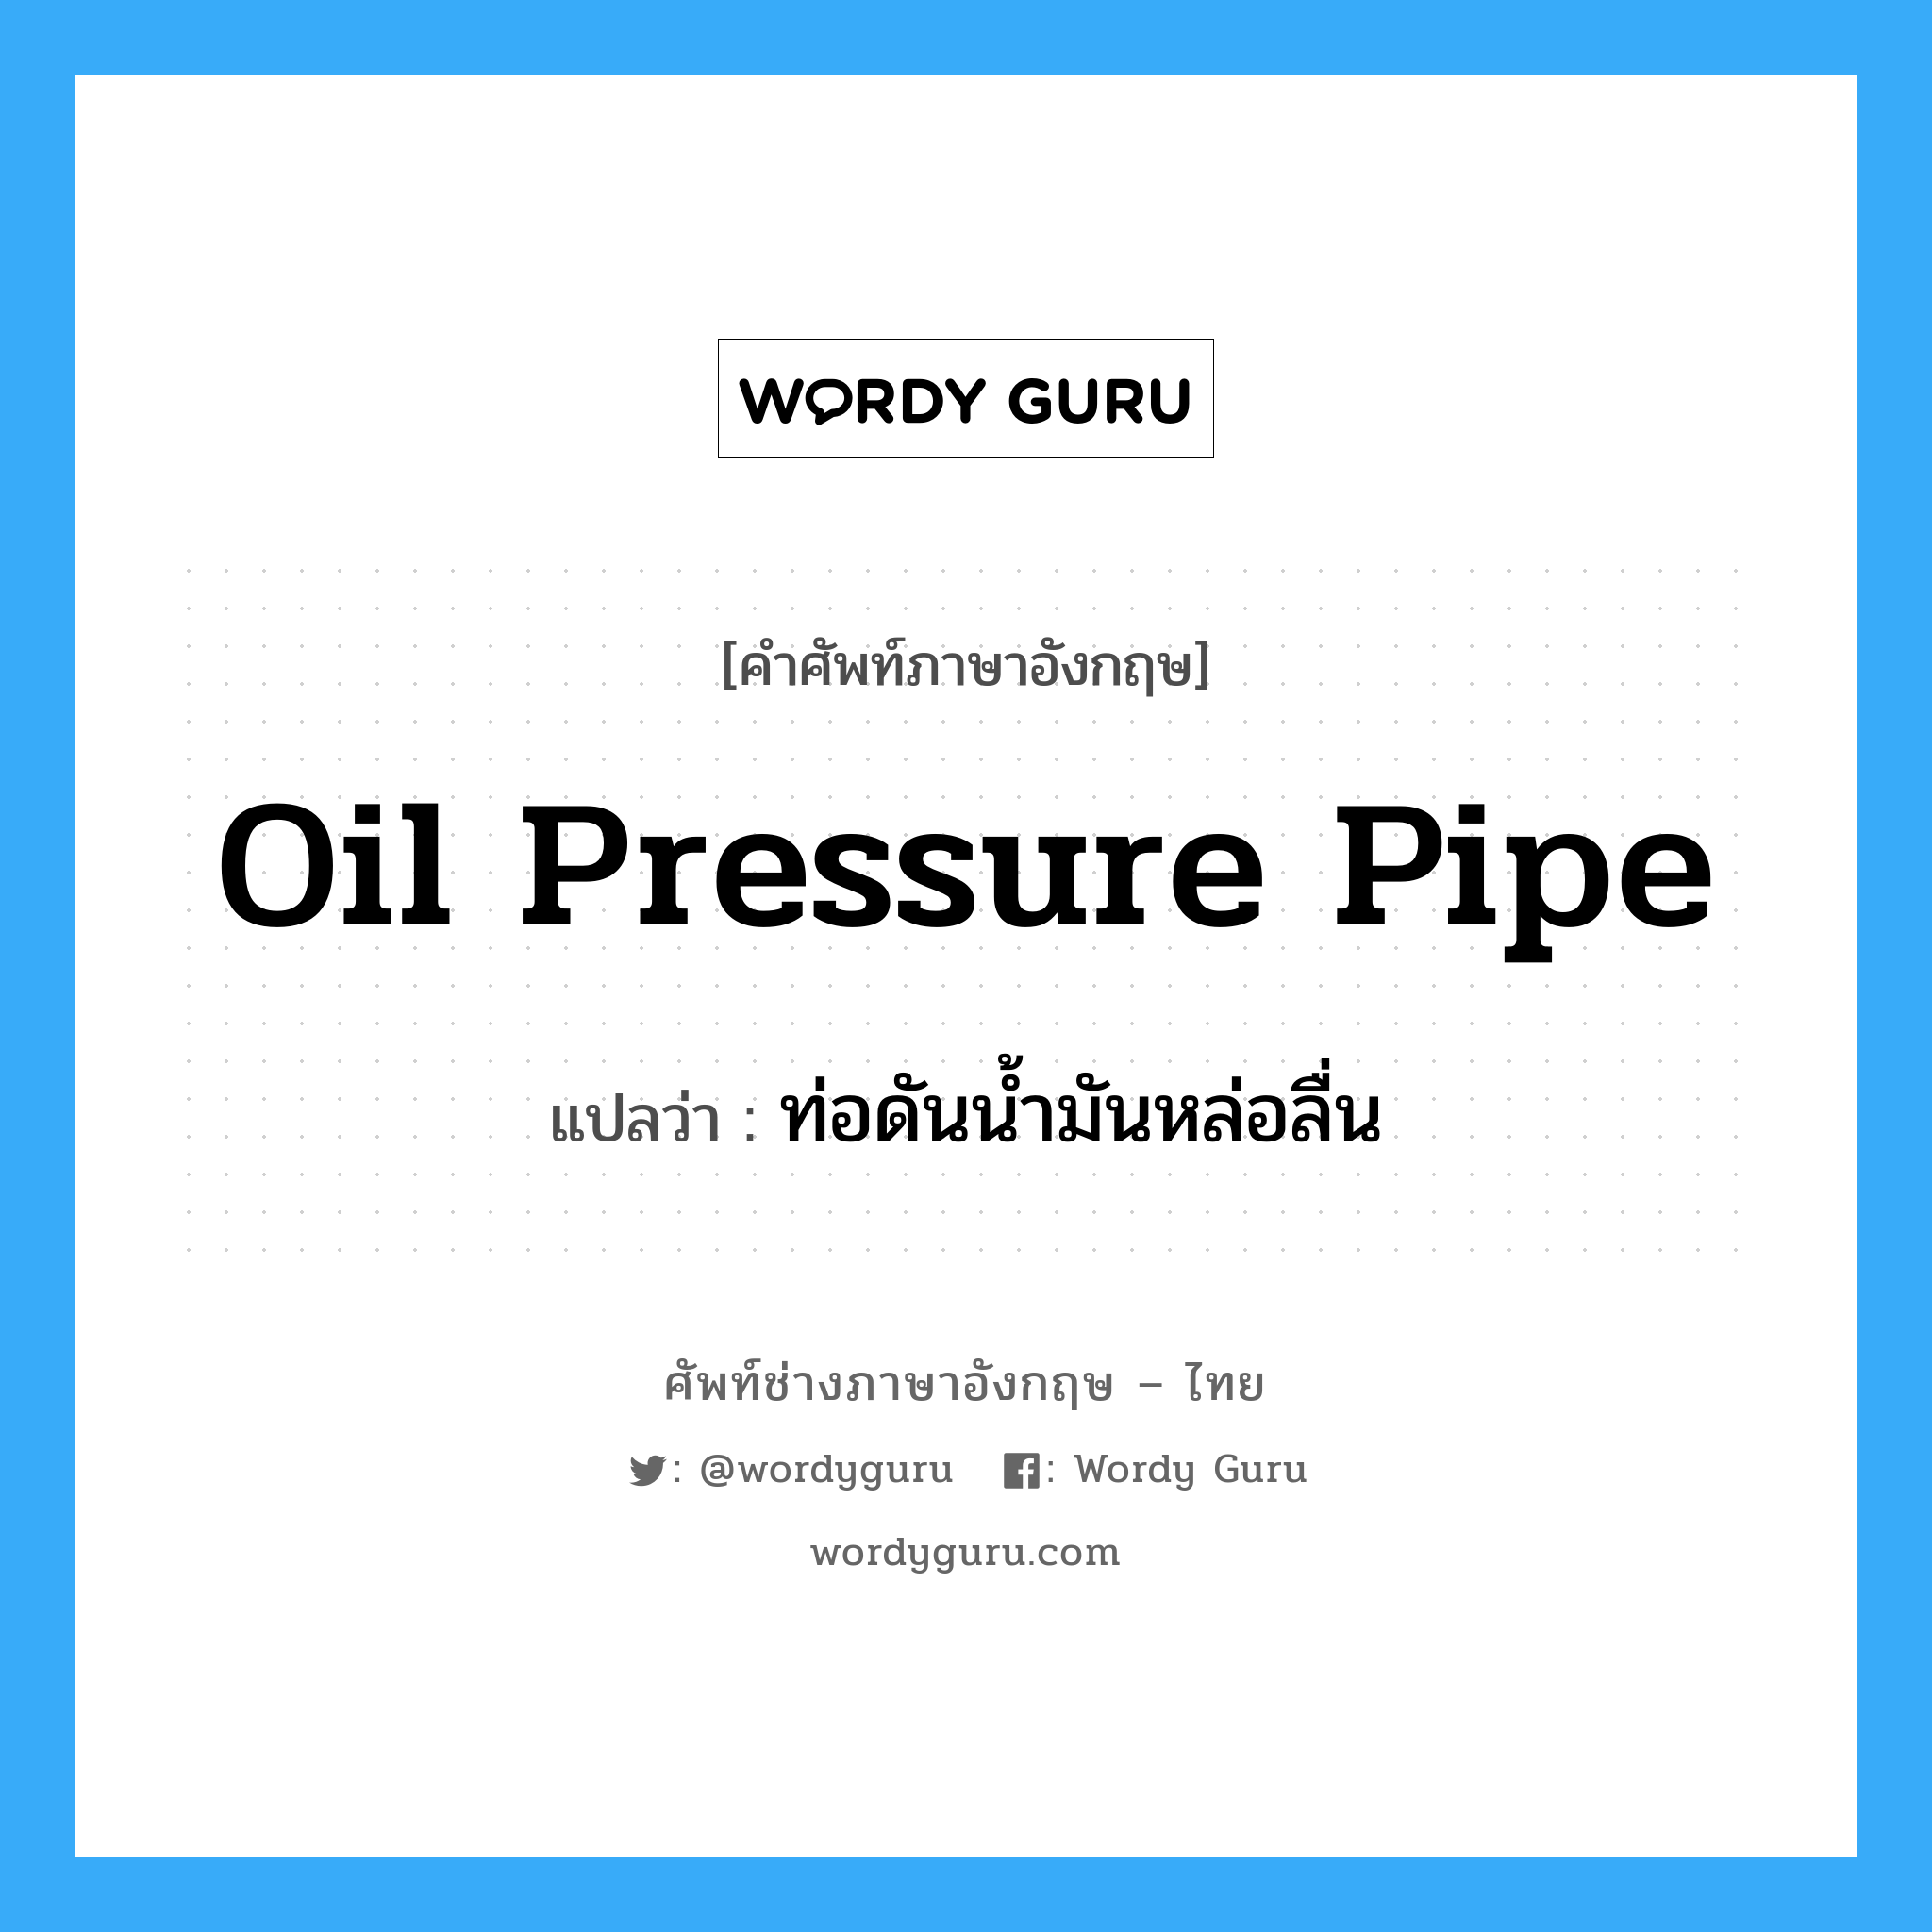 oil pressure pipe แปลว่า?, คำศัพท์ช่างภาษาอังกฤษ - ไทย oil pressure pipe คำศัพท์ภาษาอังกฤษ oil pressure pipe แปลว่า ท่อดันน้ำมันหล่อลื่น